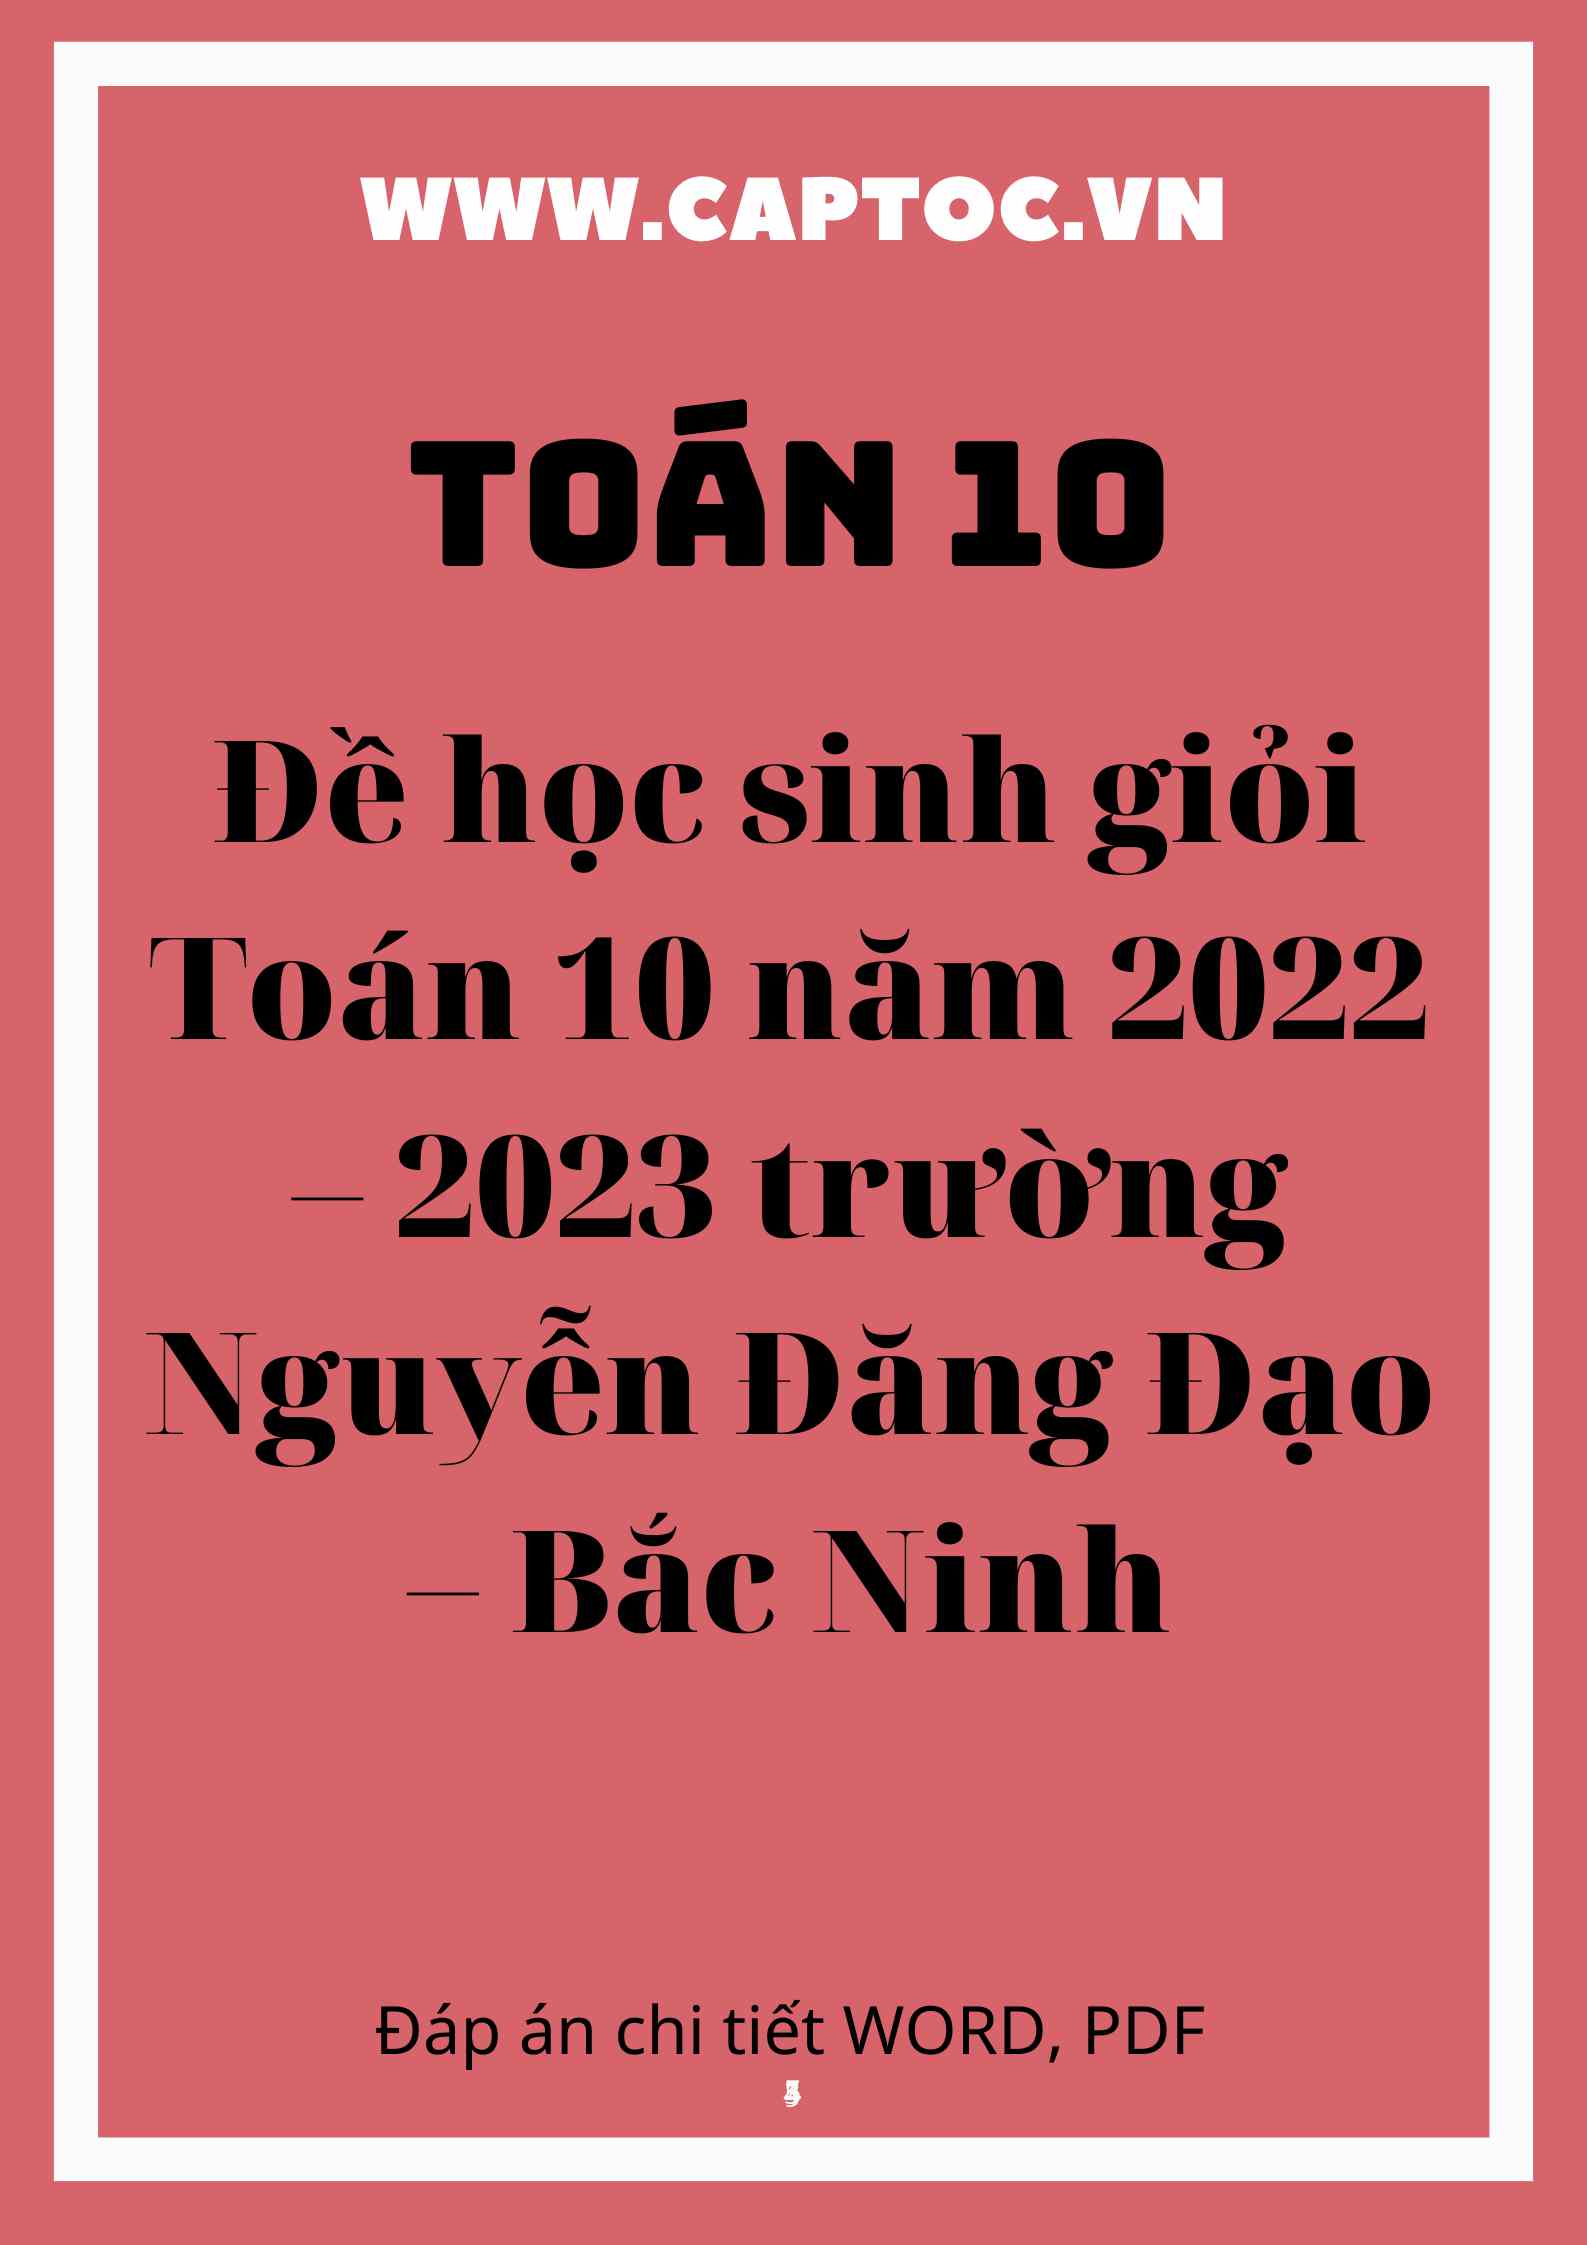 Đề học sinh giỏi Toán 10 năm 2022 – 2023 trường Nguyễn Đăng Đạo – Bắc Ninh